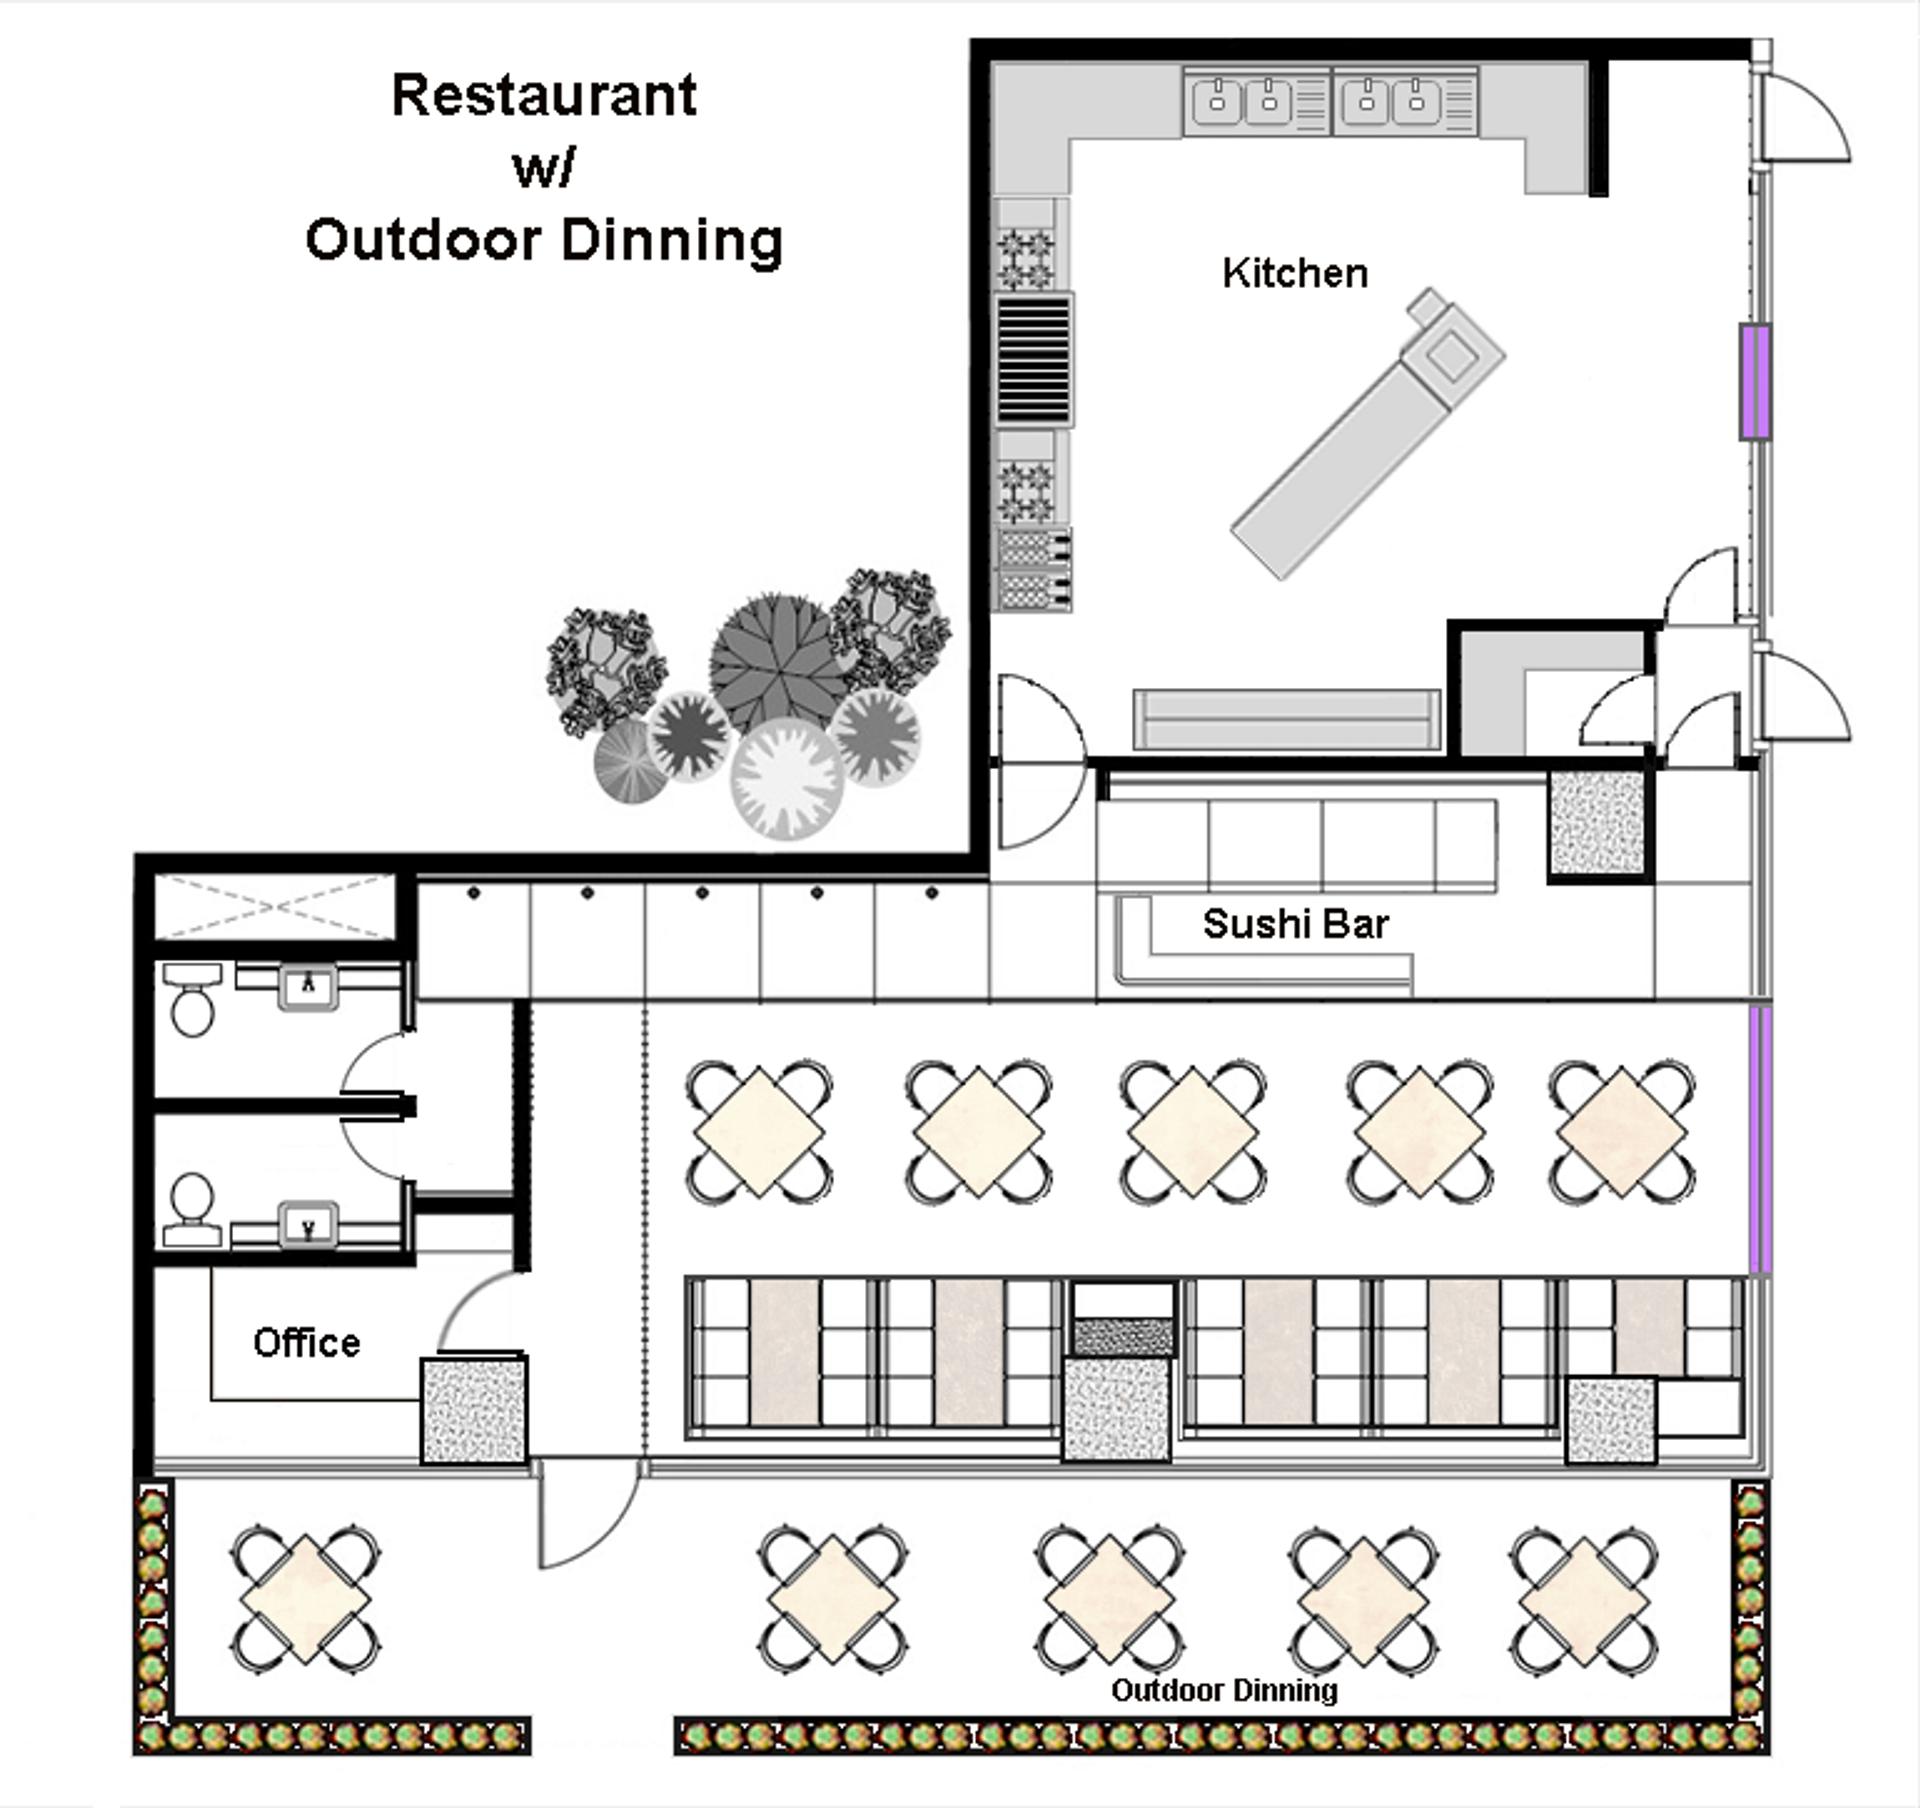 Cómo diseñar planos de restaurantes [Ejemplos y consejos]